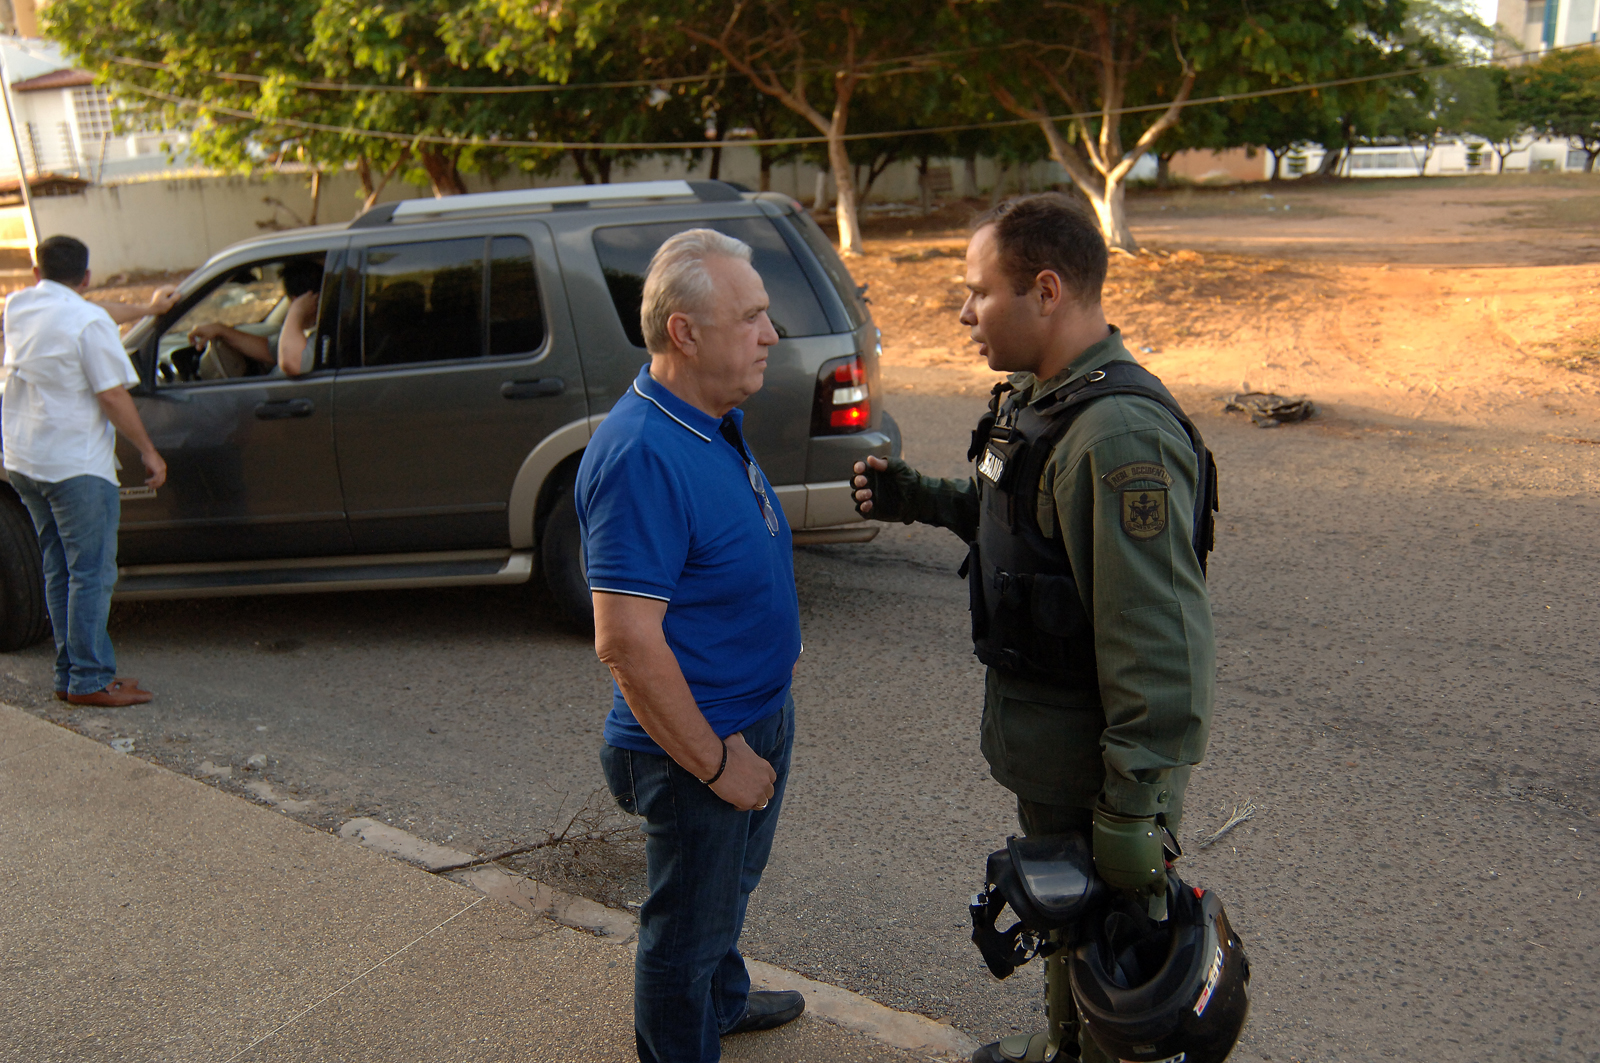 Carlos Alaimo denuncia amenazas durante “trancazo” en Maracaibo